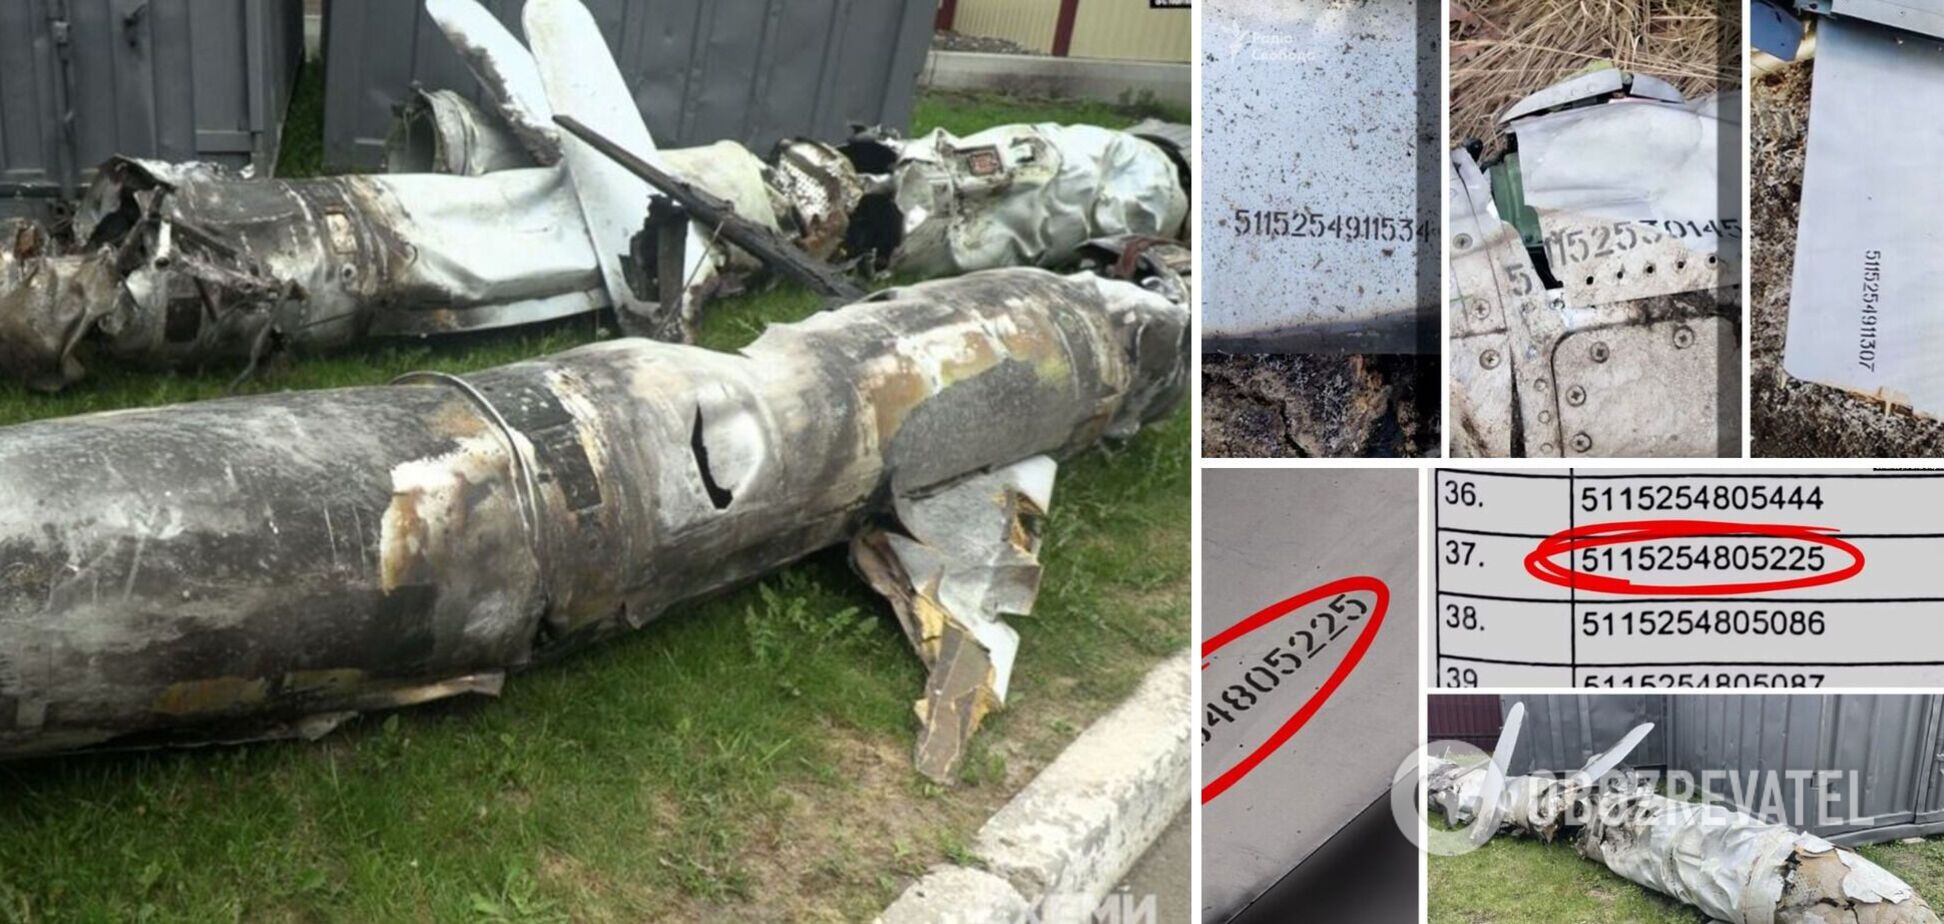 575 ракет і 11 бомбардувальників: хто стояв за злочинним рішенням про передачу українського озброєння Росії